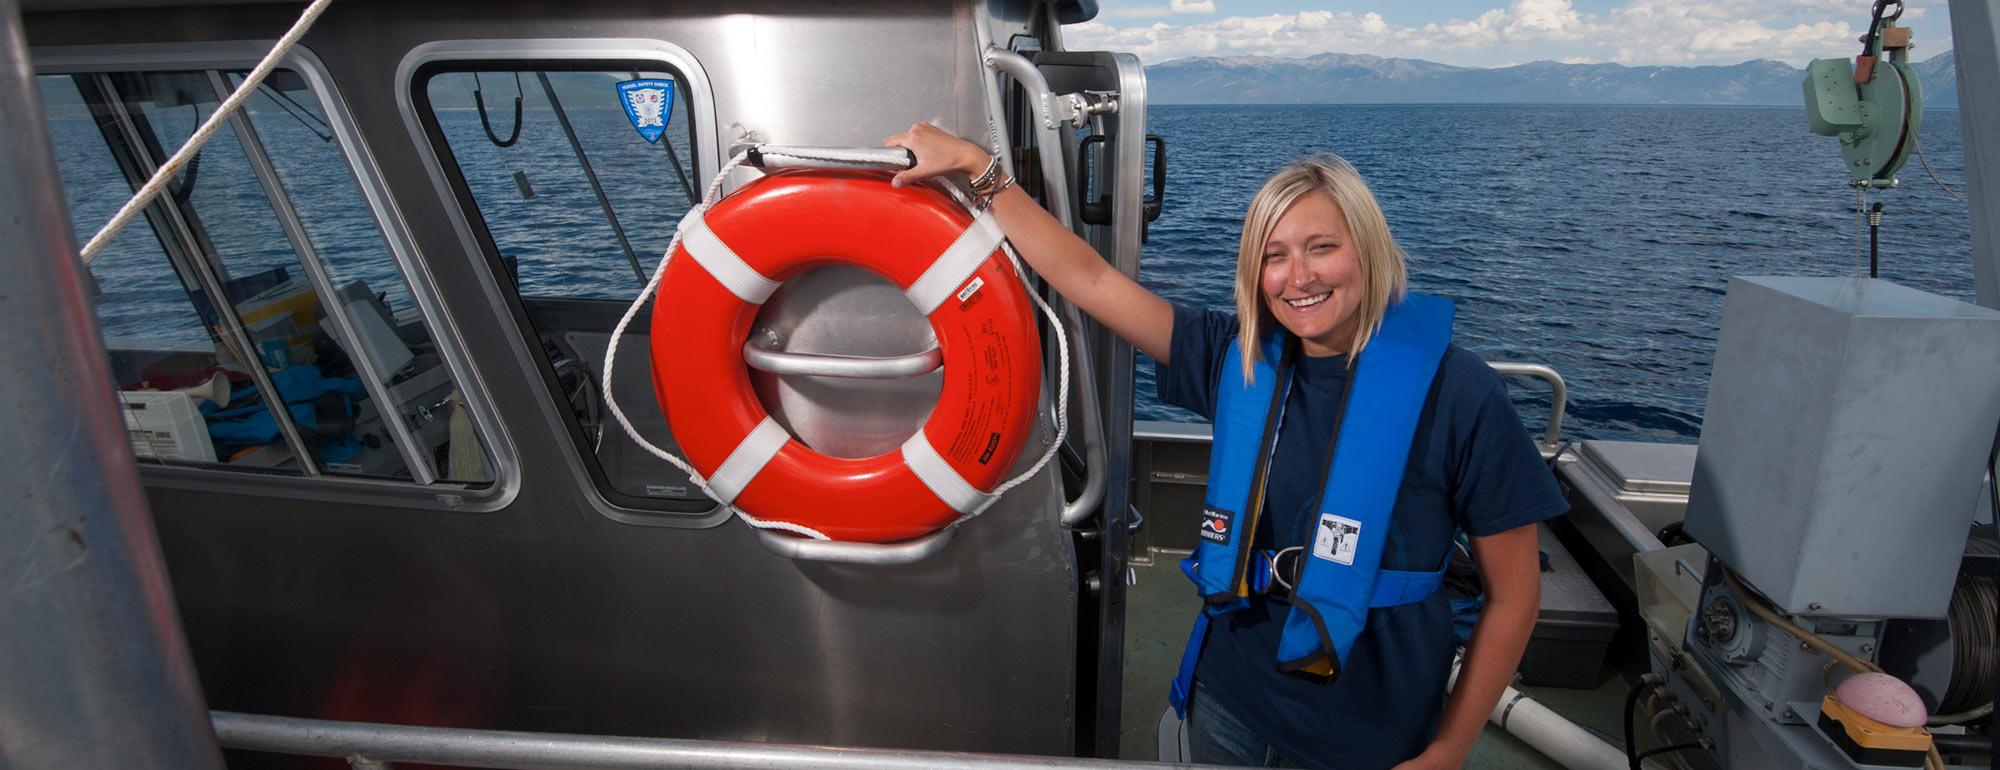 一名女性研究员在太浩湖上的一艘研究船上拍照